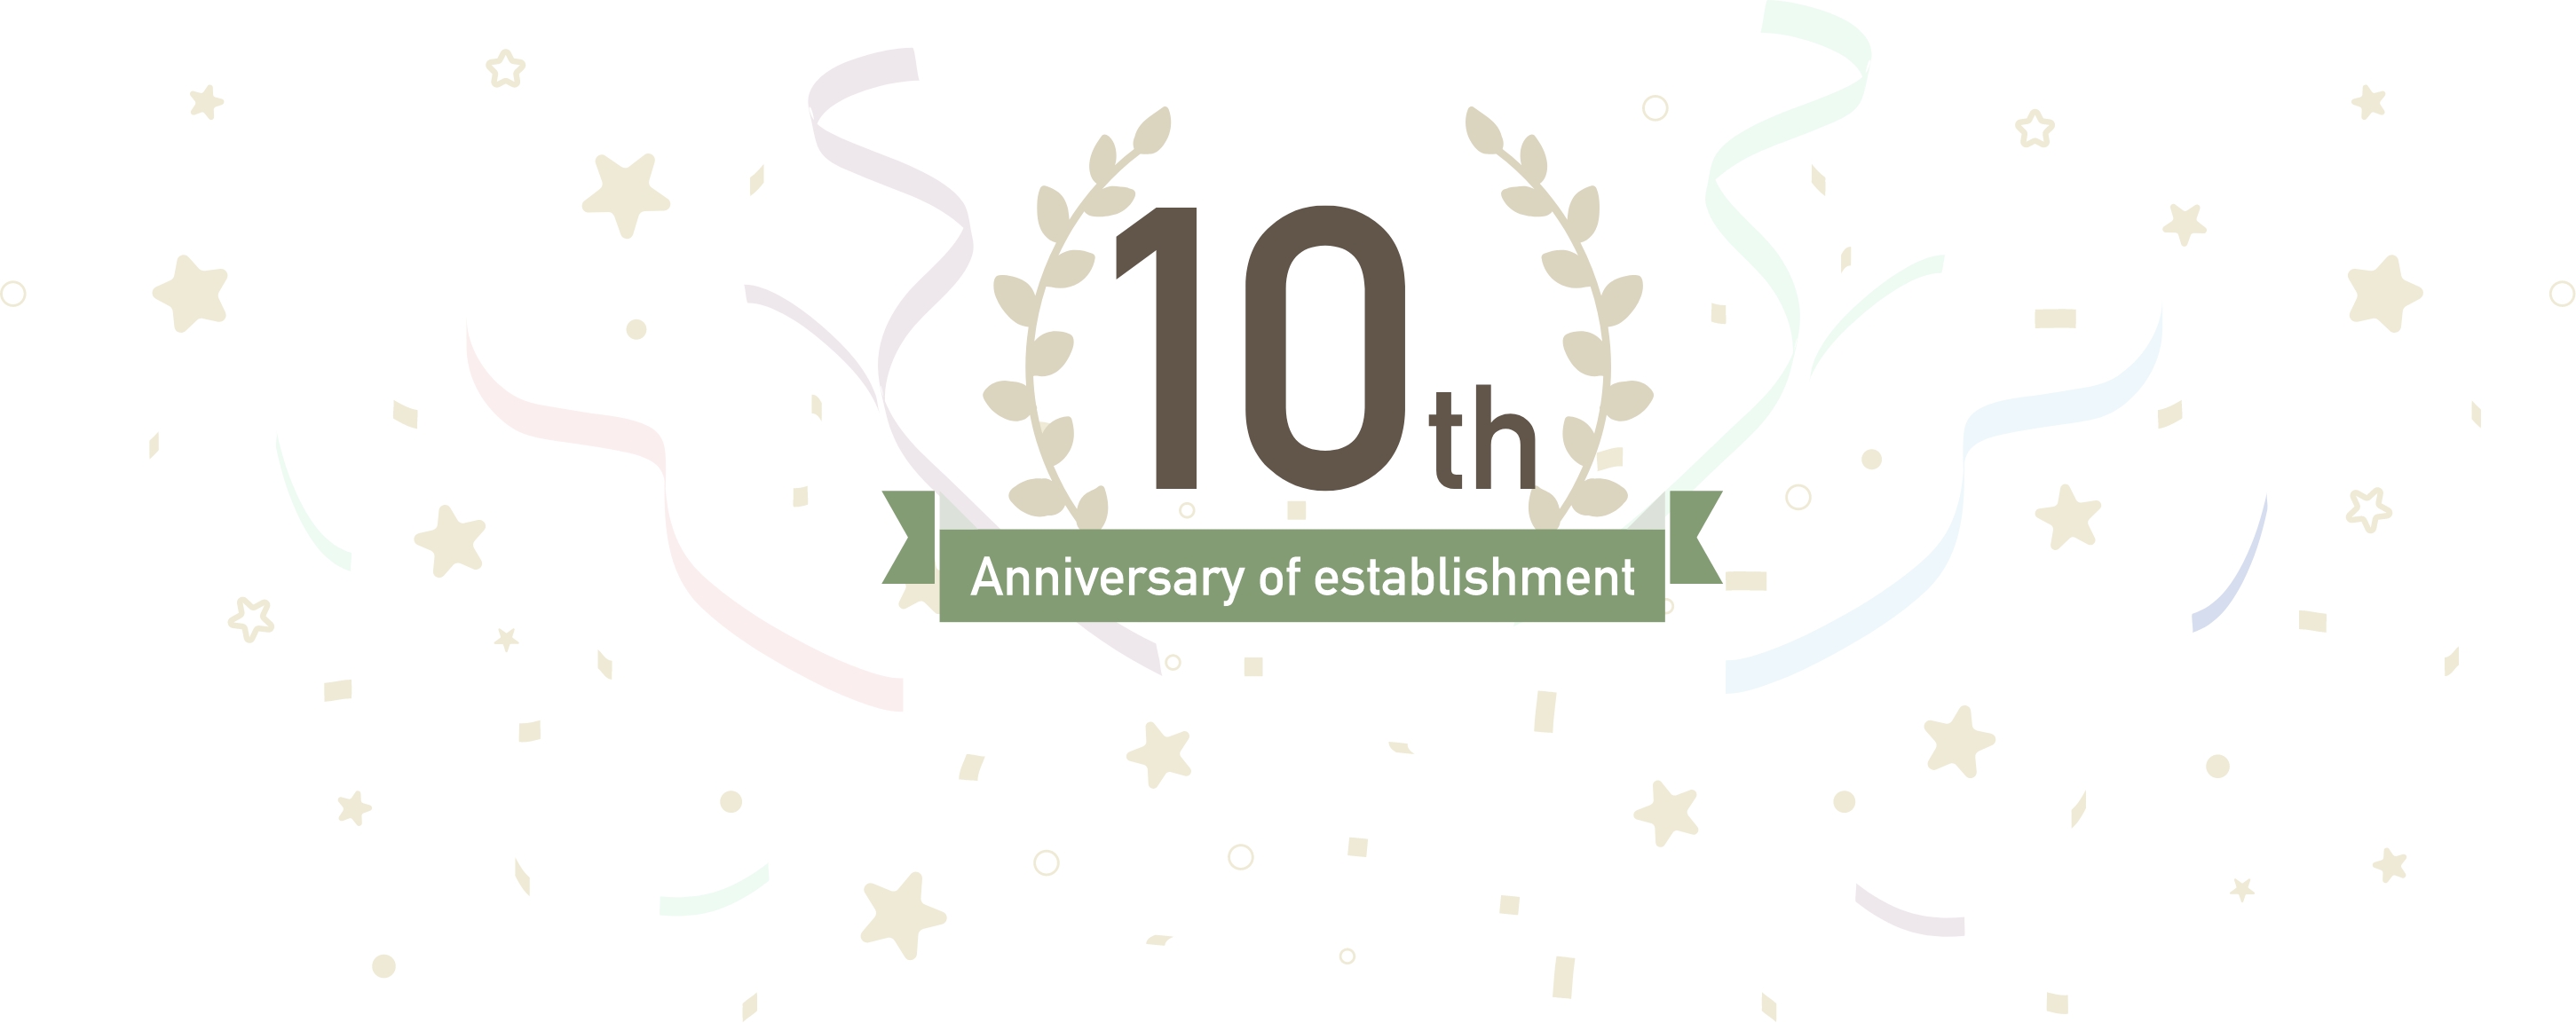 10th Anniversary of establishment